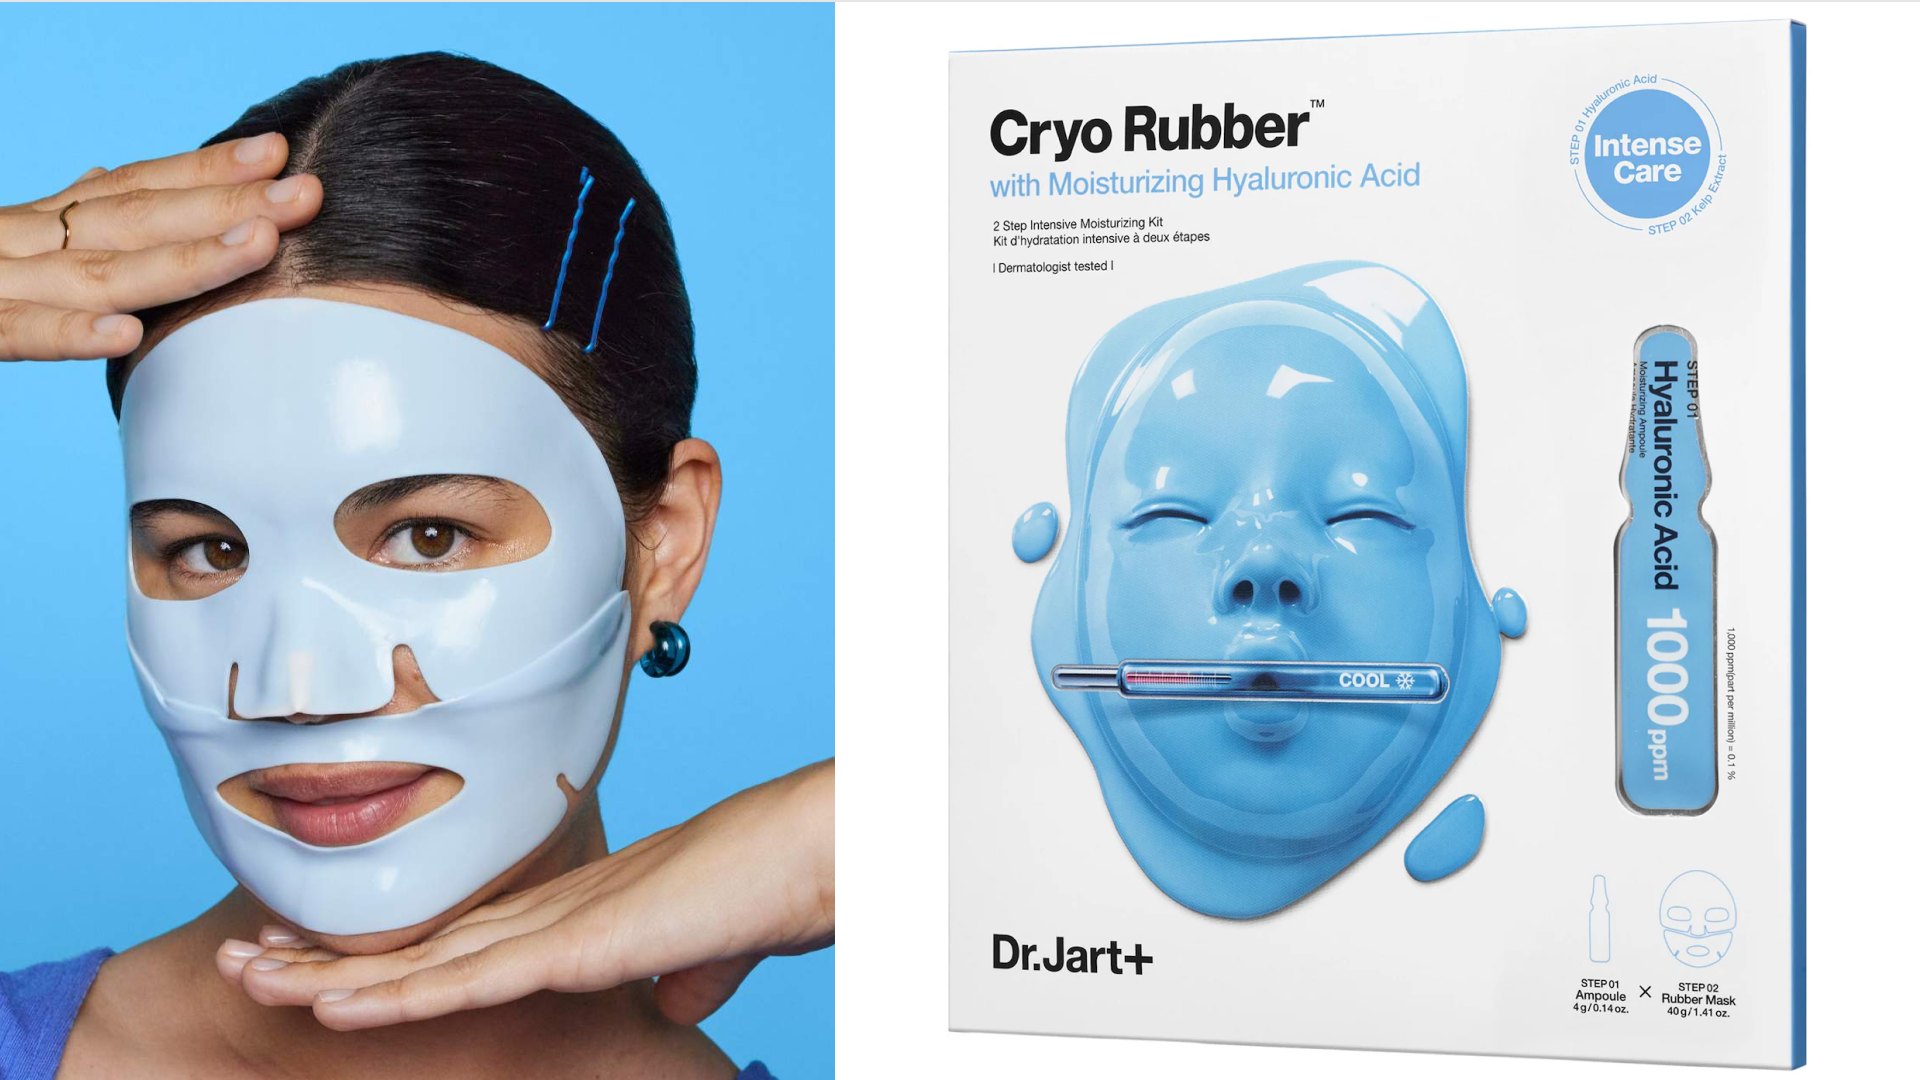 Dr. Jart+ cryo cooling rubber face mask